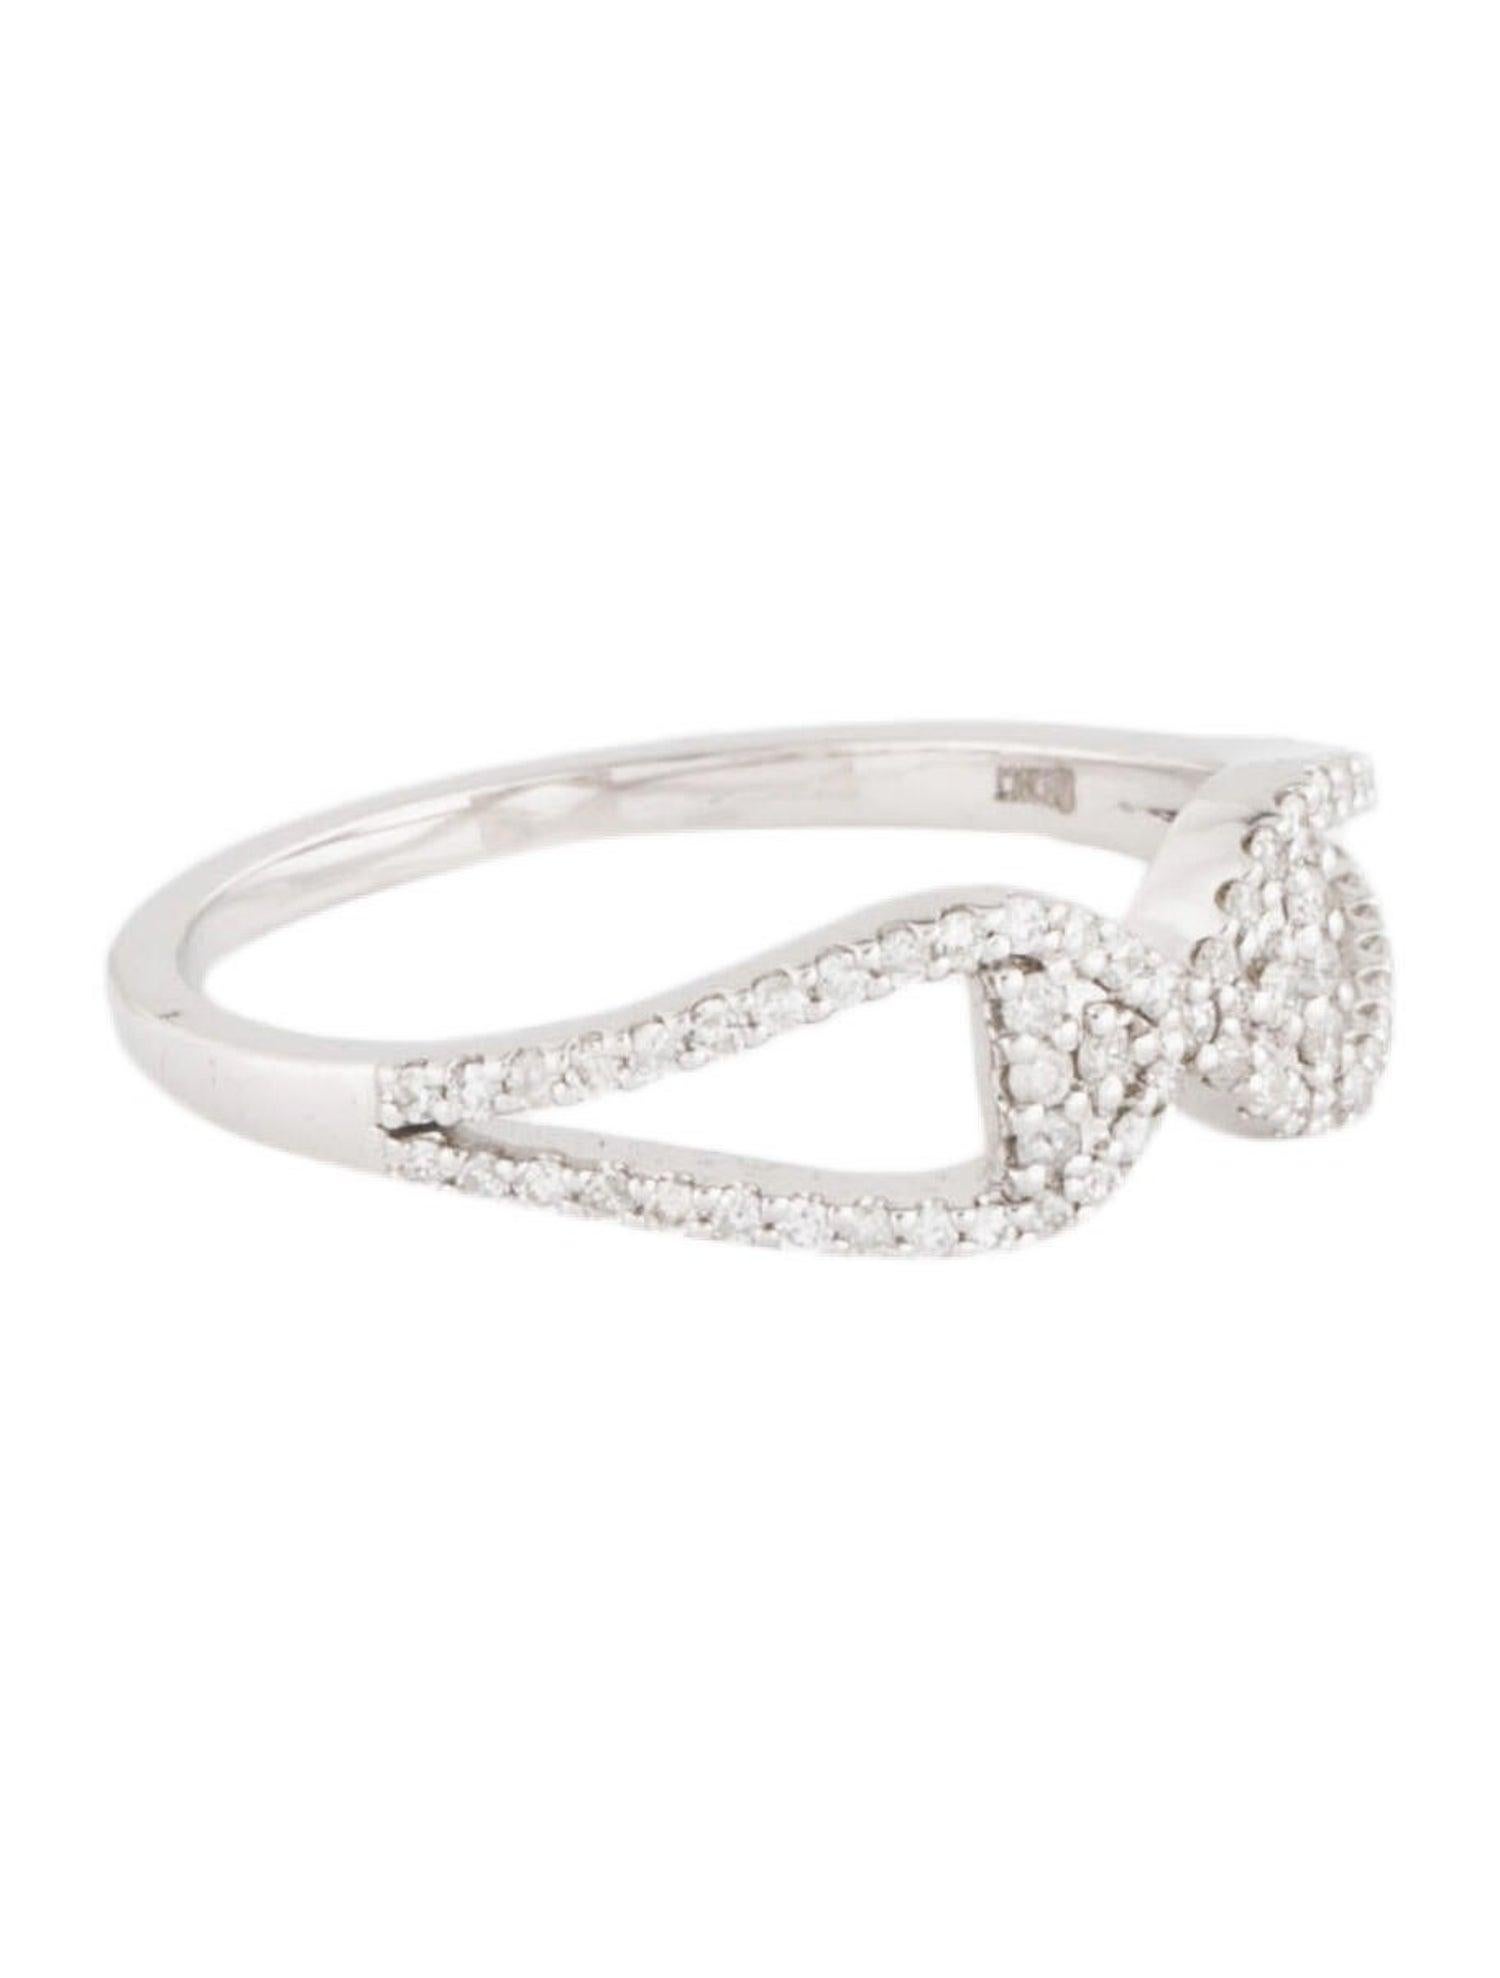 Erleben Sie die bezaubernde Schönheit des Winters mit unserem Snowflake Soirée Diamond Ring, einer faszinierenden Kreation aus unserer exquisiten Kollektion. Dieser Ring ist mit funkelnden weißen Diamanten besetzt, die so angeordnet sind, dass sie